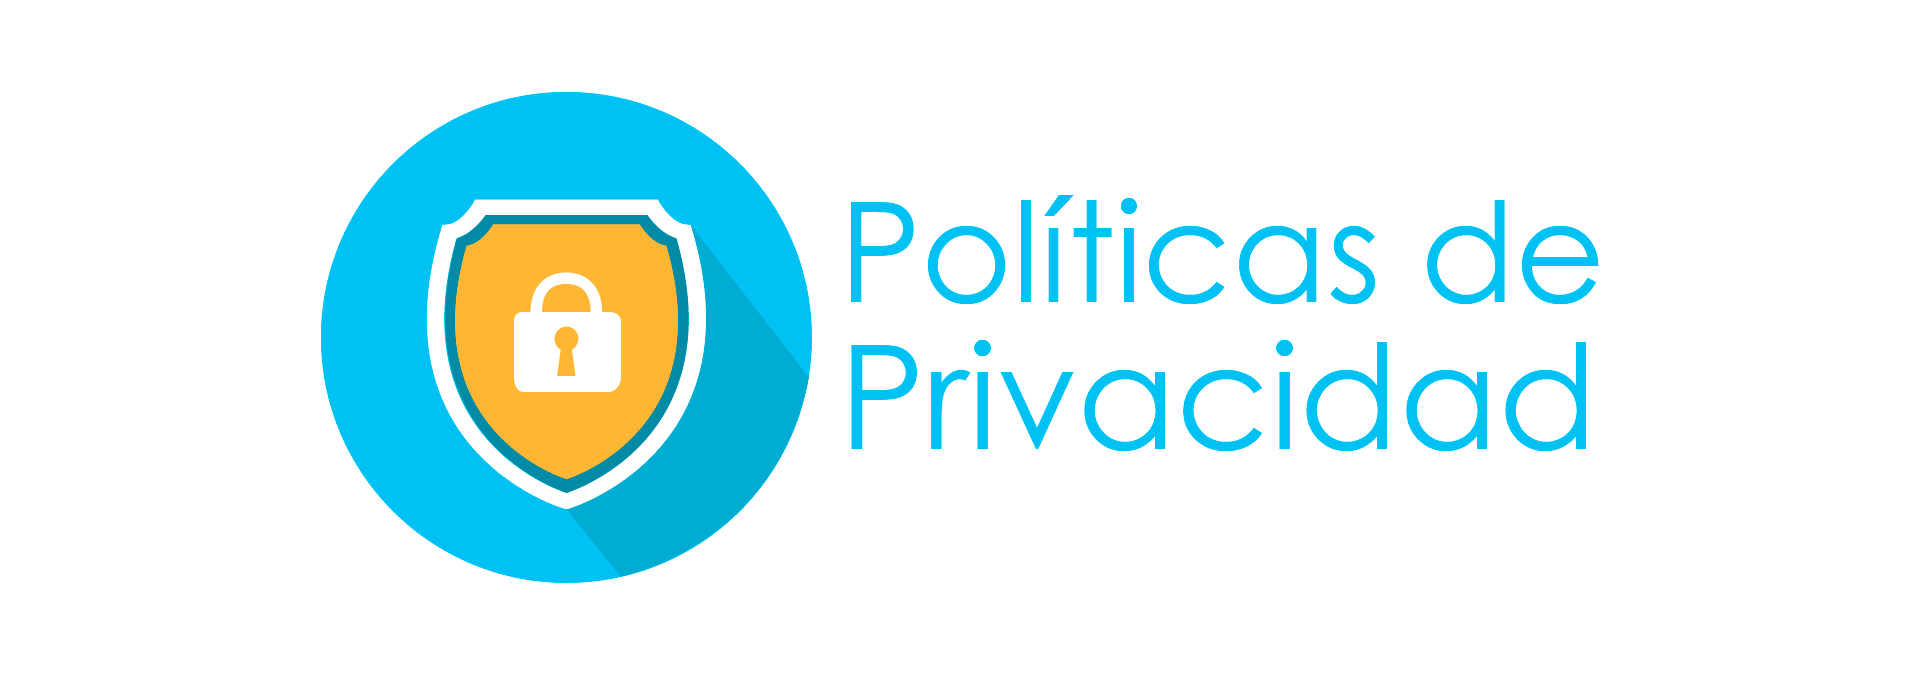 Politicas de privacidad de onlyfans